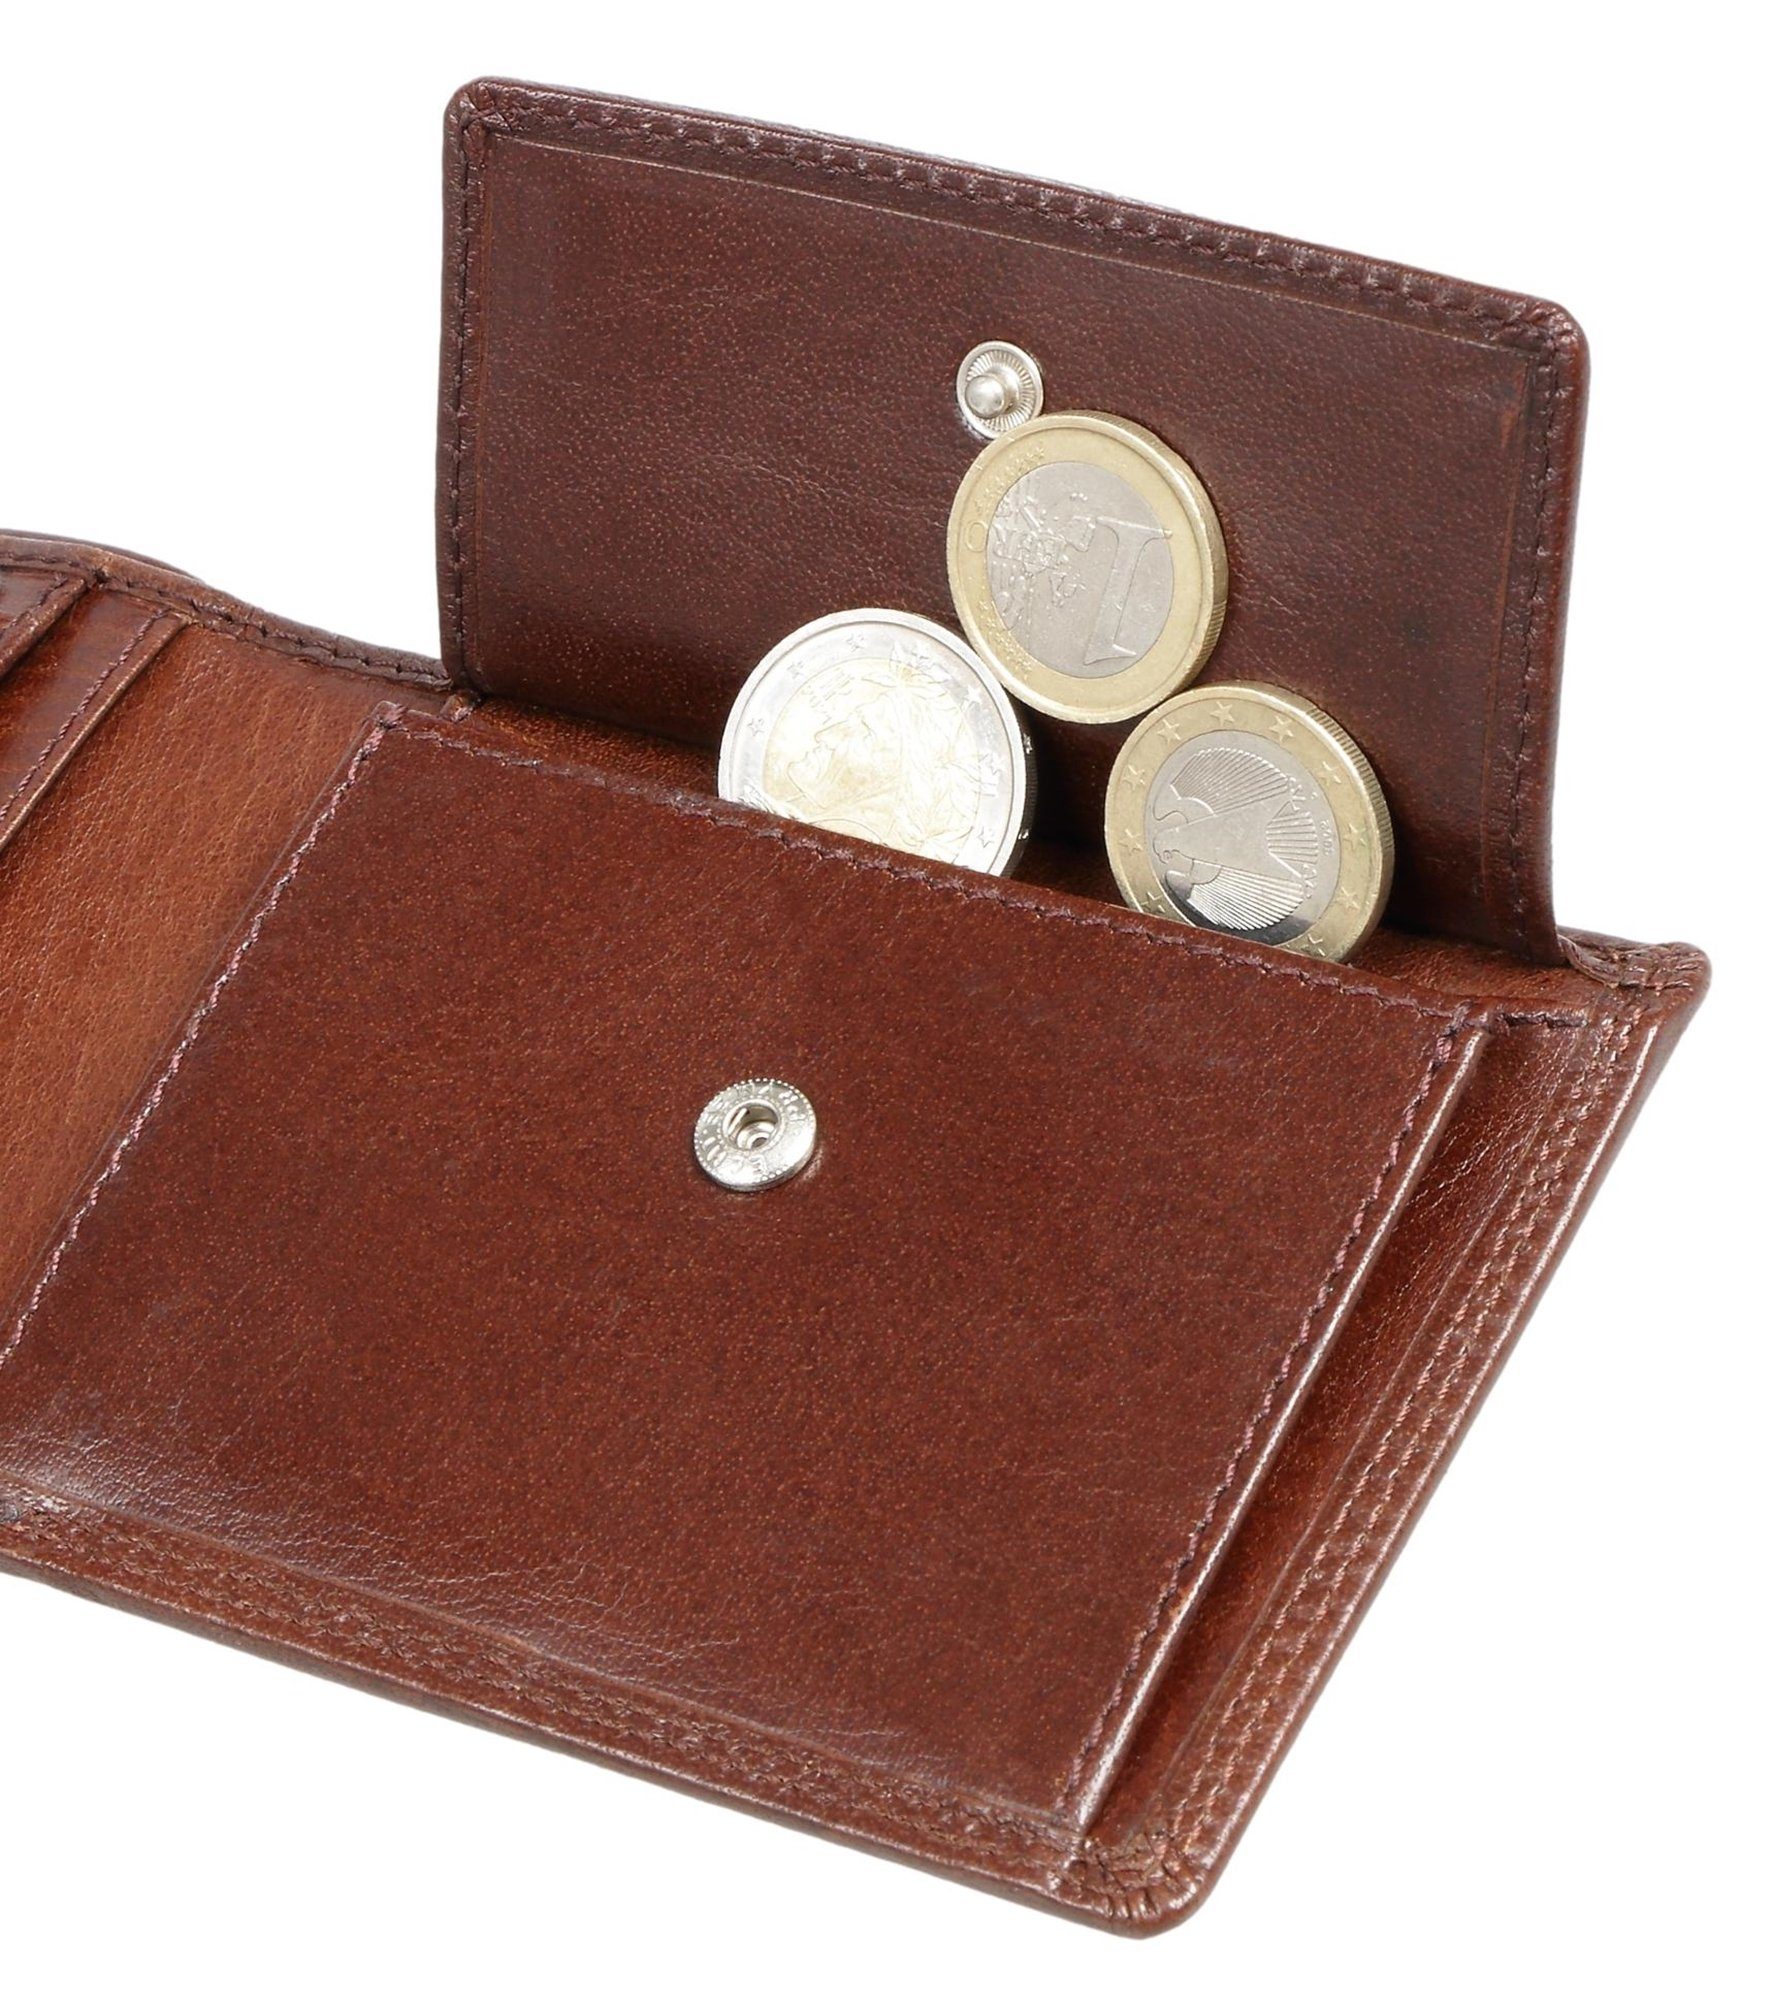 RFID-Schutz Braun Modell Bear aus und Herren 8005 D klassisches Toscana Portemonnaie Braun mit Kartenfächern Echtleder, 9 Geldbörse Brown